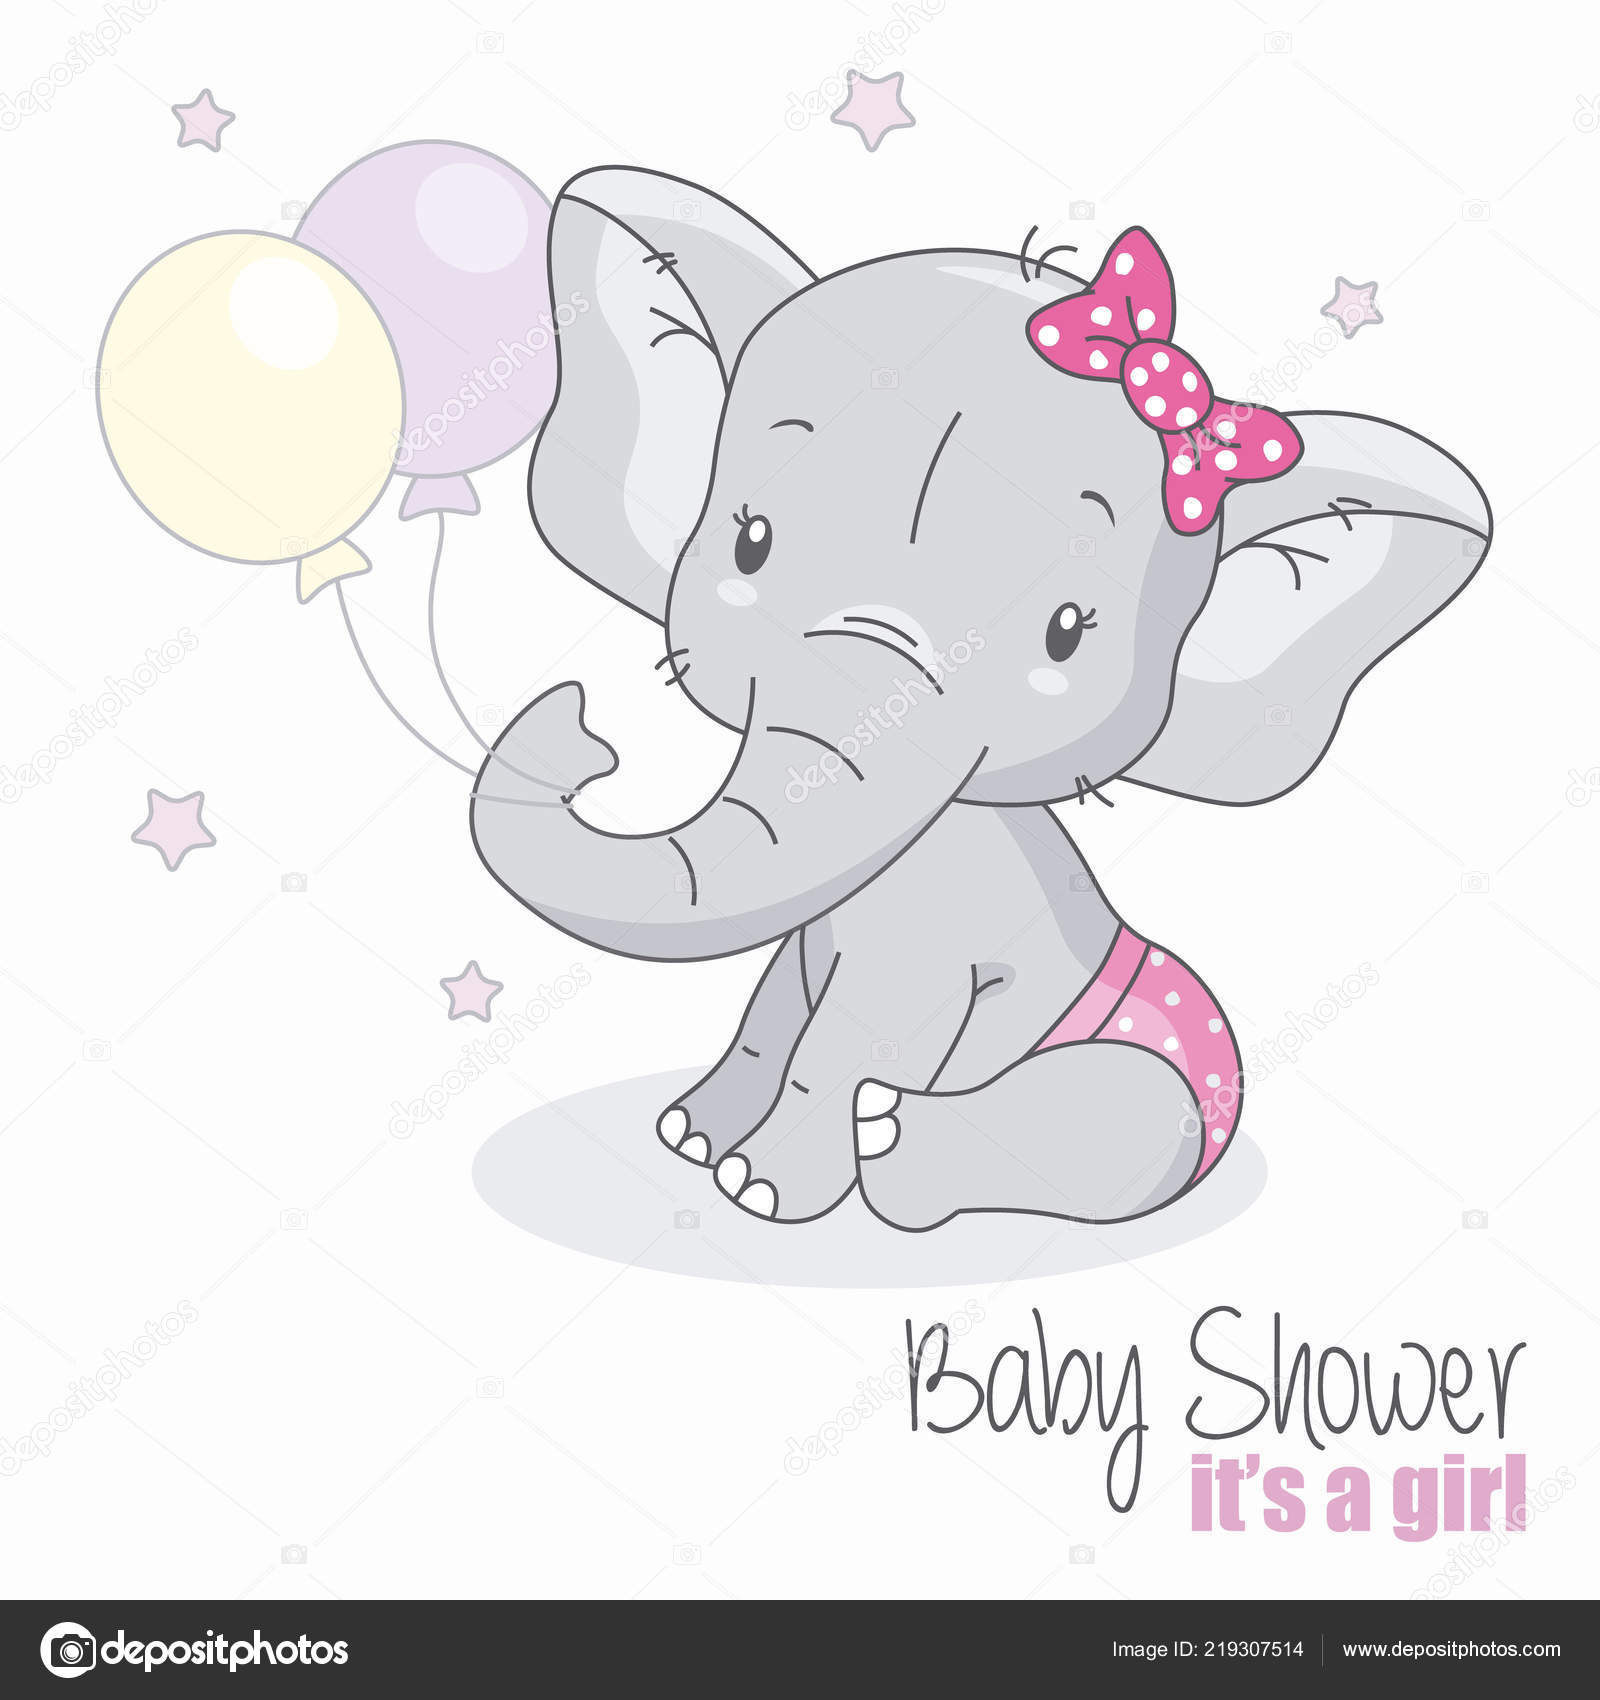 https://st4.depositphotos.com/1318242/21930/v/1600/depositphotos_219307514-stock-illustration-baby-shower-girl-cute-elephant.jpg